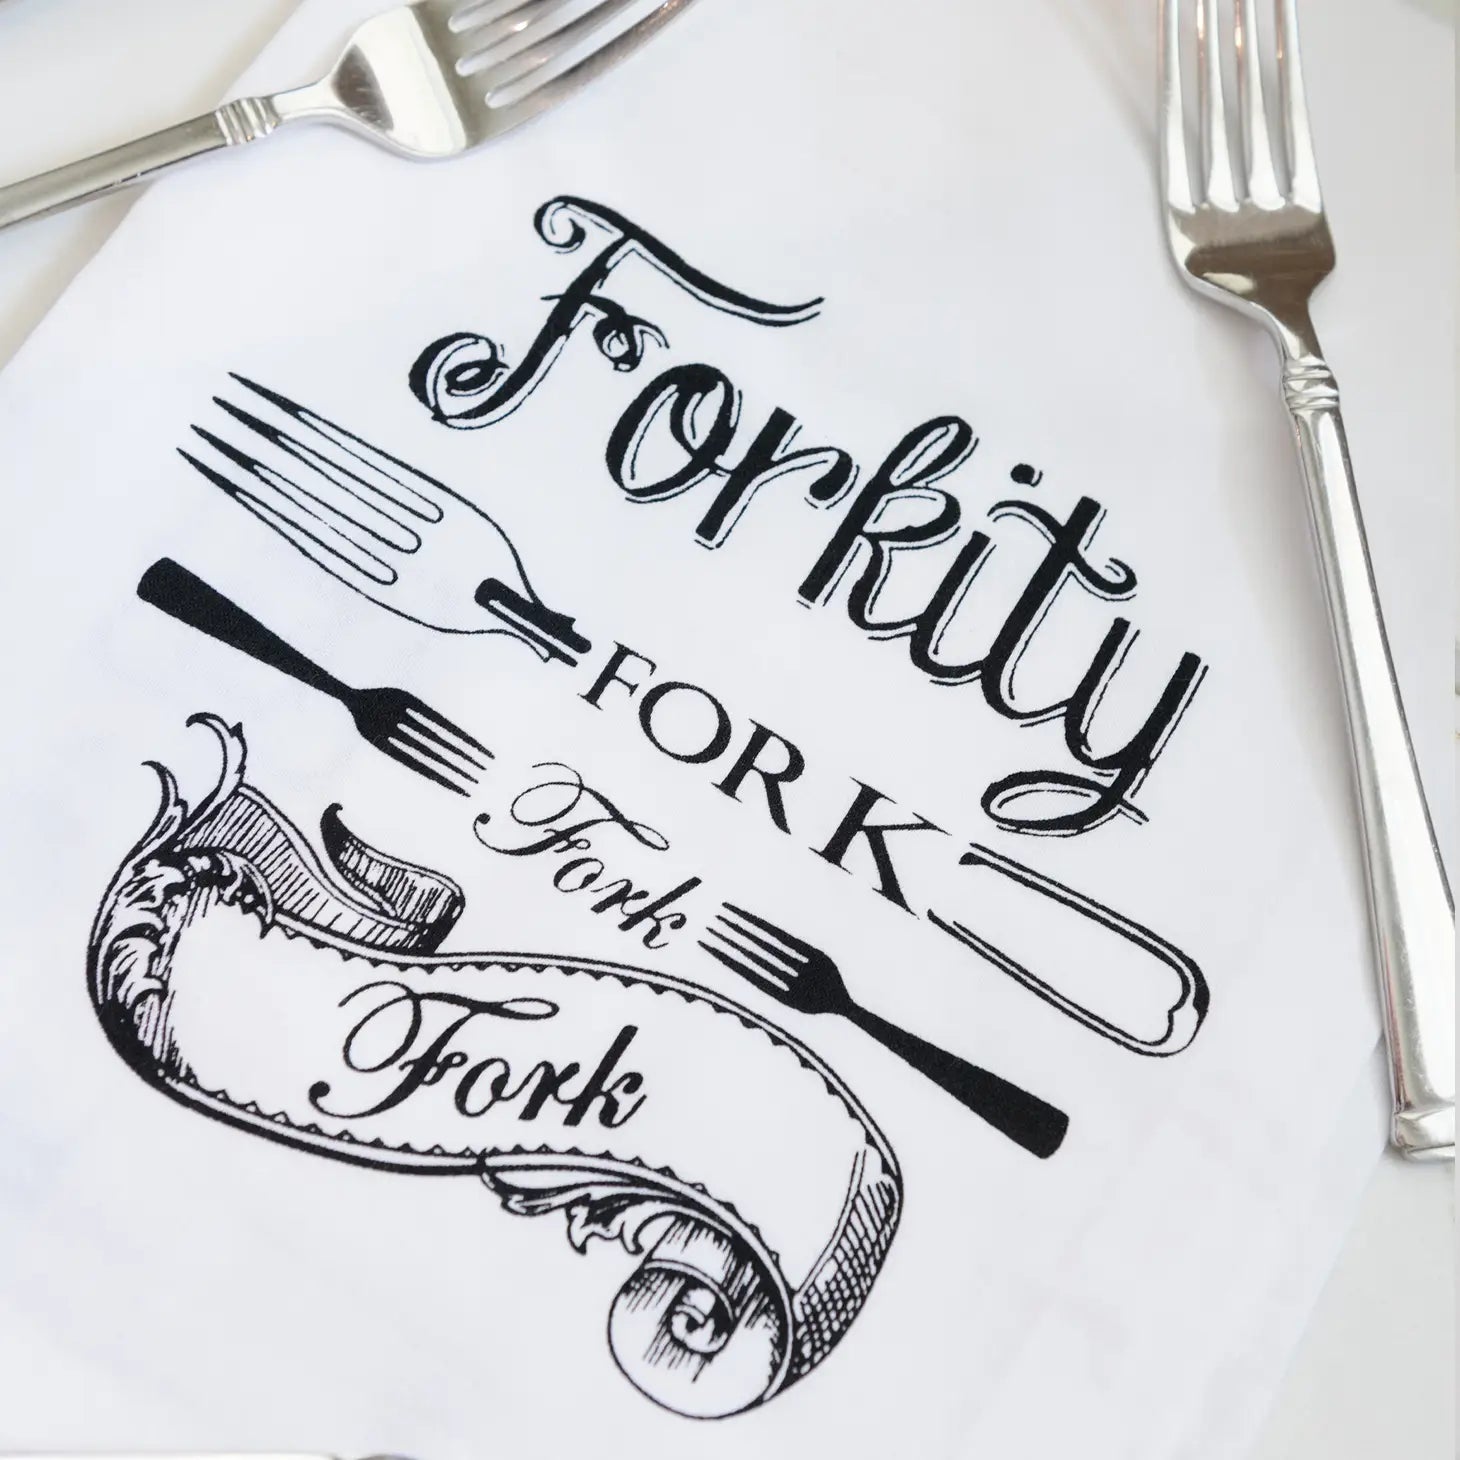 Forkity Fork Fork Kitchen Towel